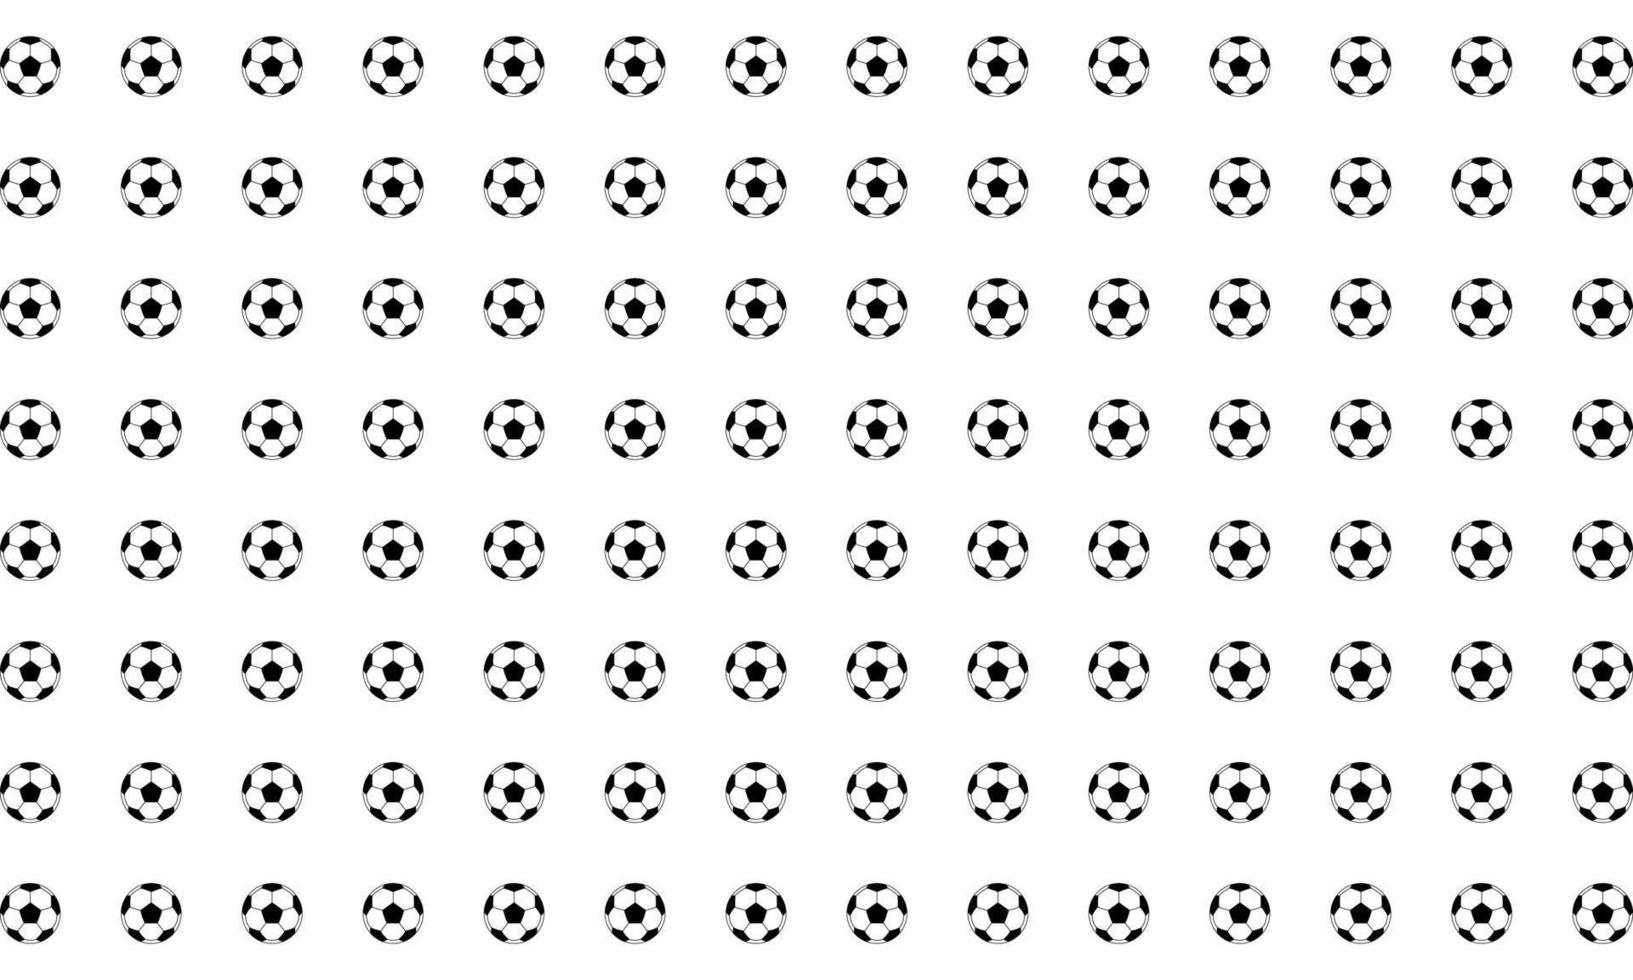 patrón de motivo impecable compuesto por una composición de pelota de pie o pelota de fútbol para el fondo, el patrón, la decoración, la decoración, el sitio web o el elemento de diseño gráfico. ilustración vectorial vector